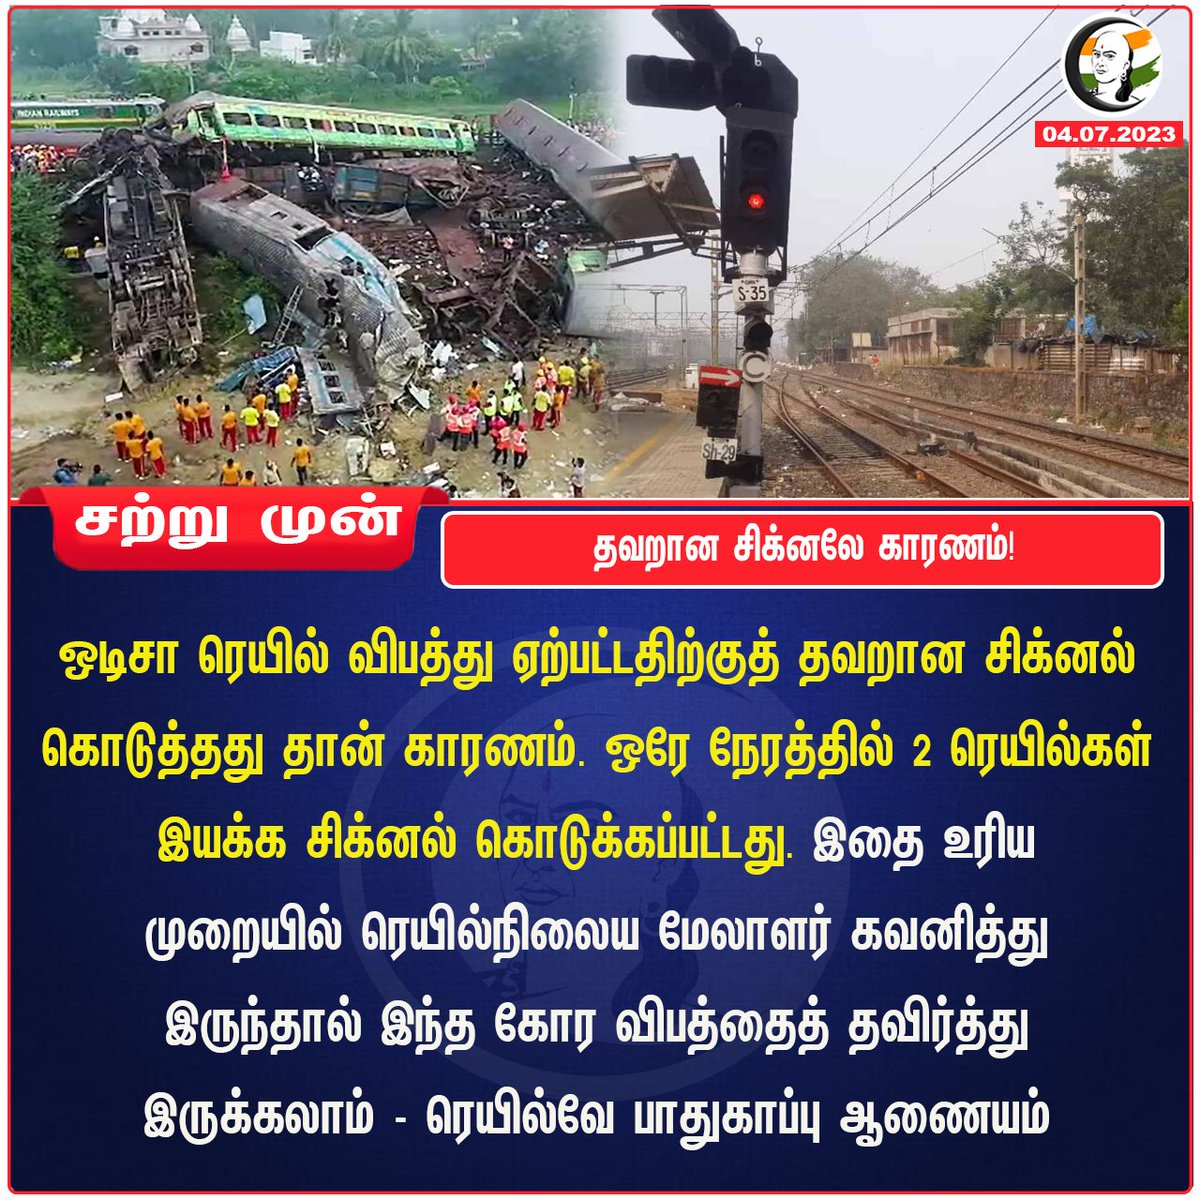 தவறான சிக்னலே காரணம்!
#trainsignal   #trainaccidentinodisha